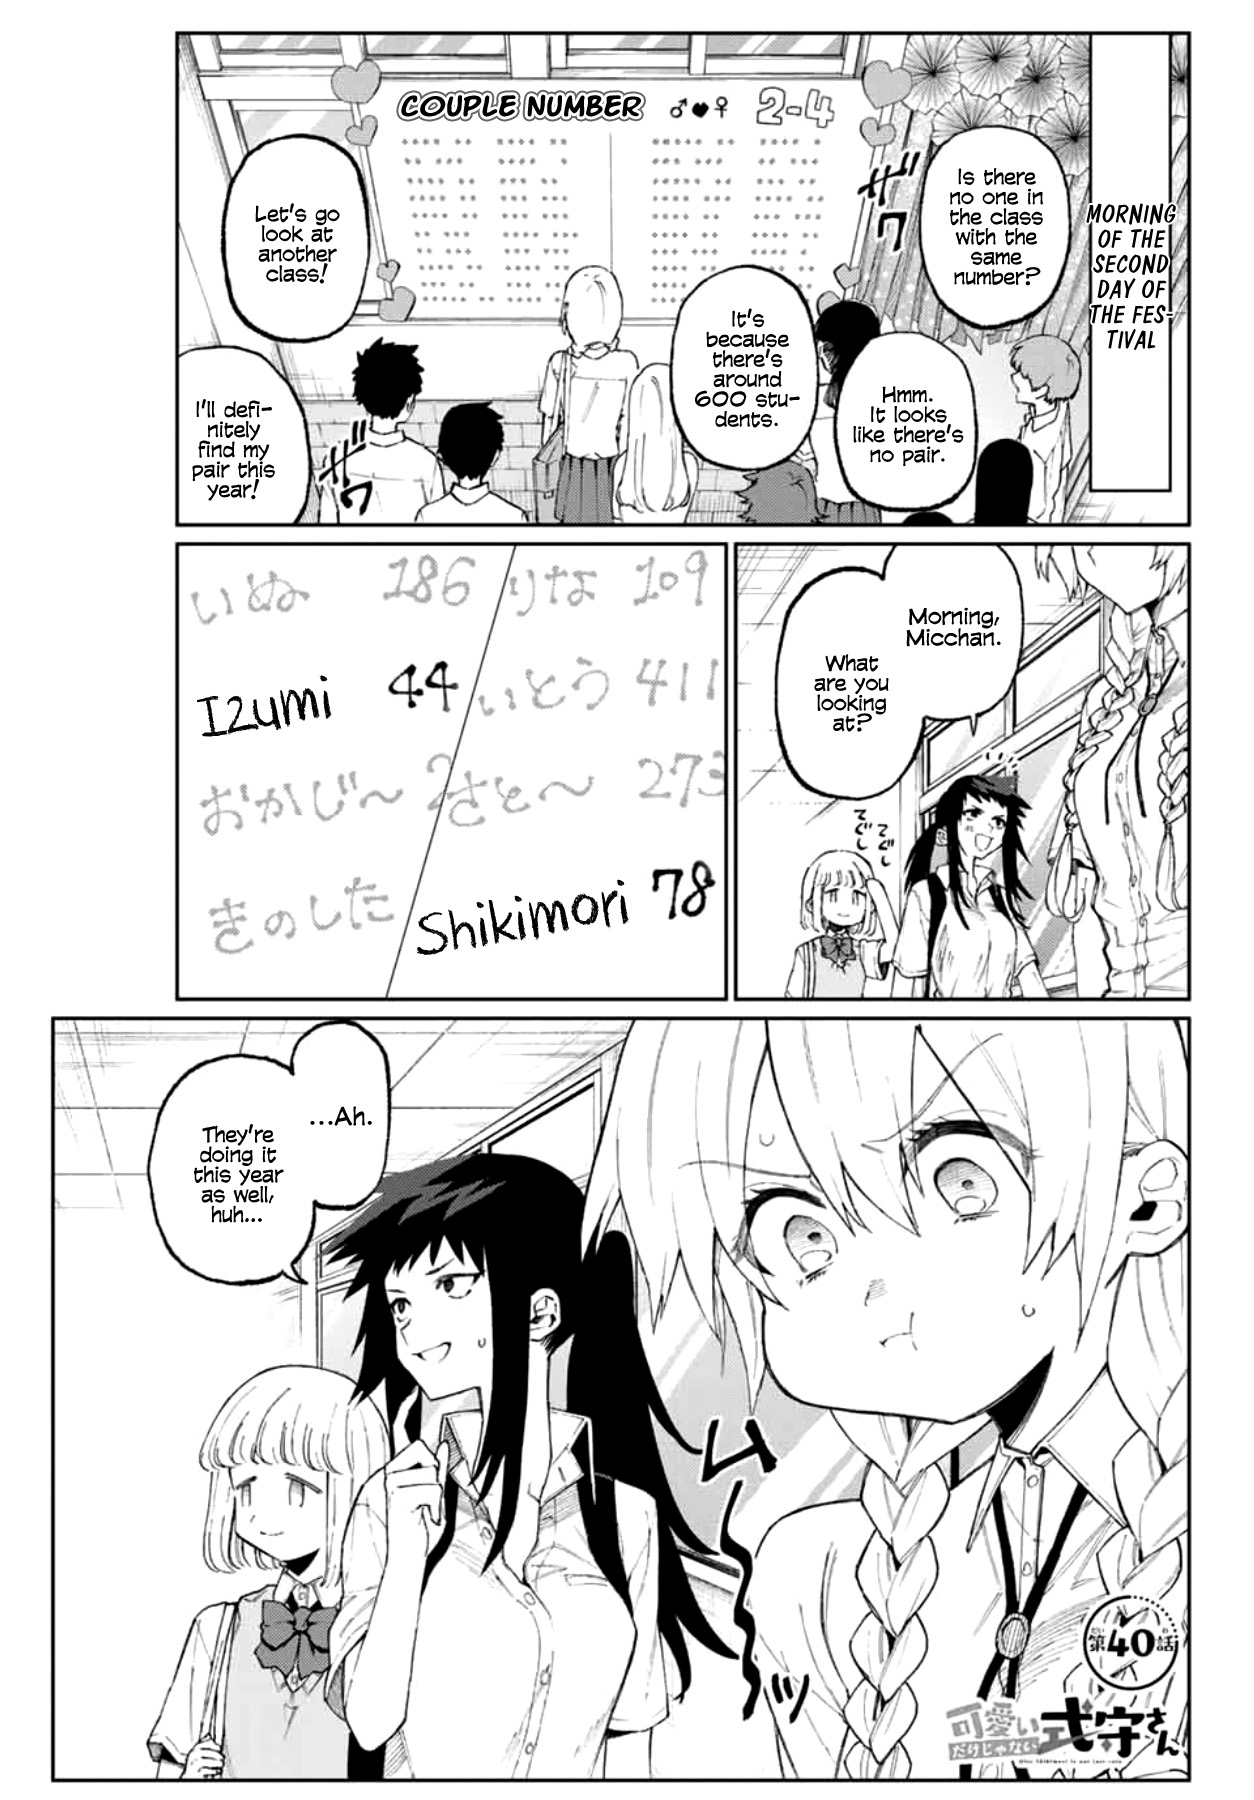 Shikimori's Not Just a Cutie Vol. 4 Ch. 40